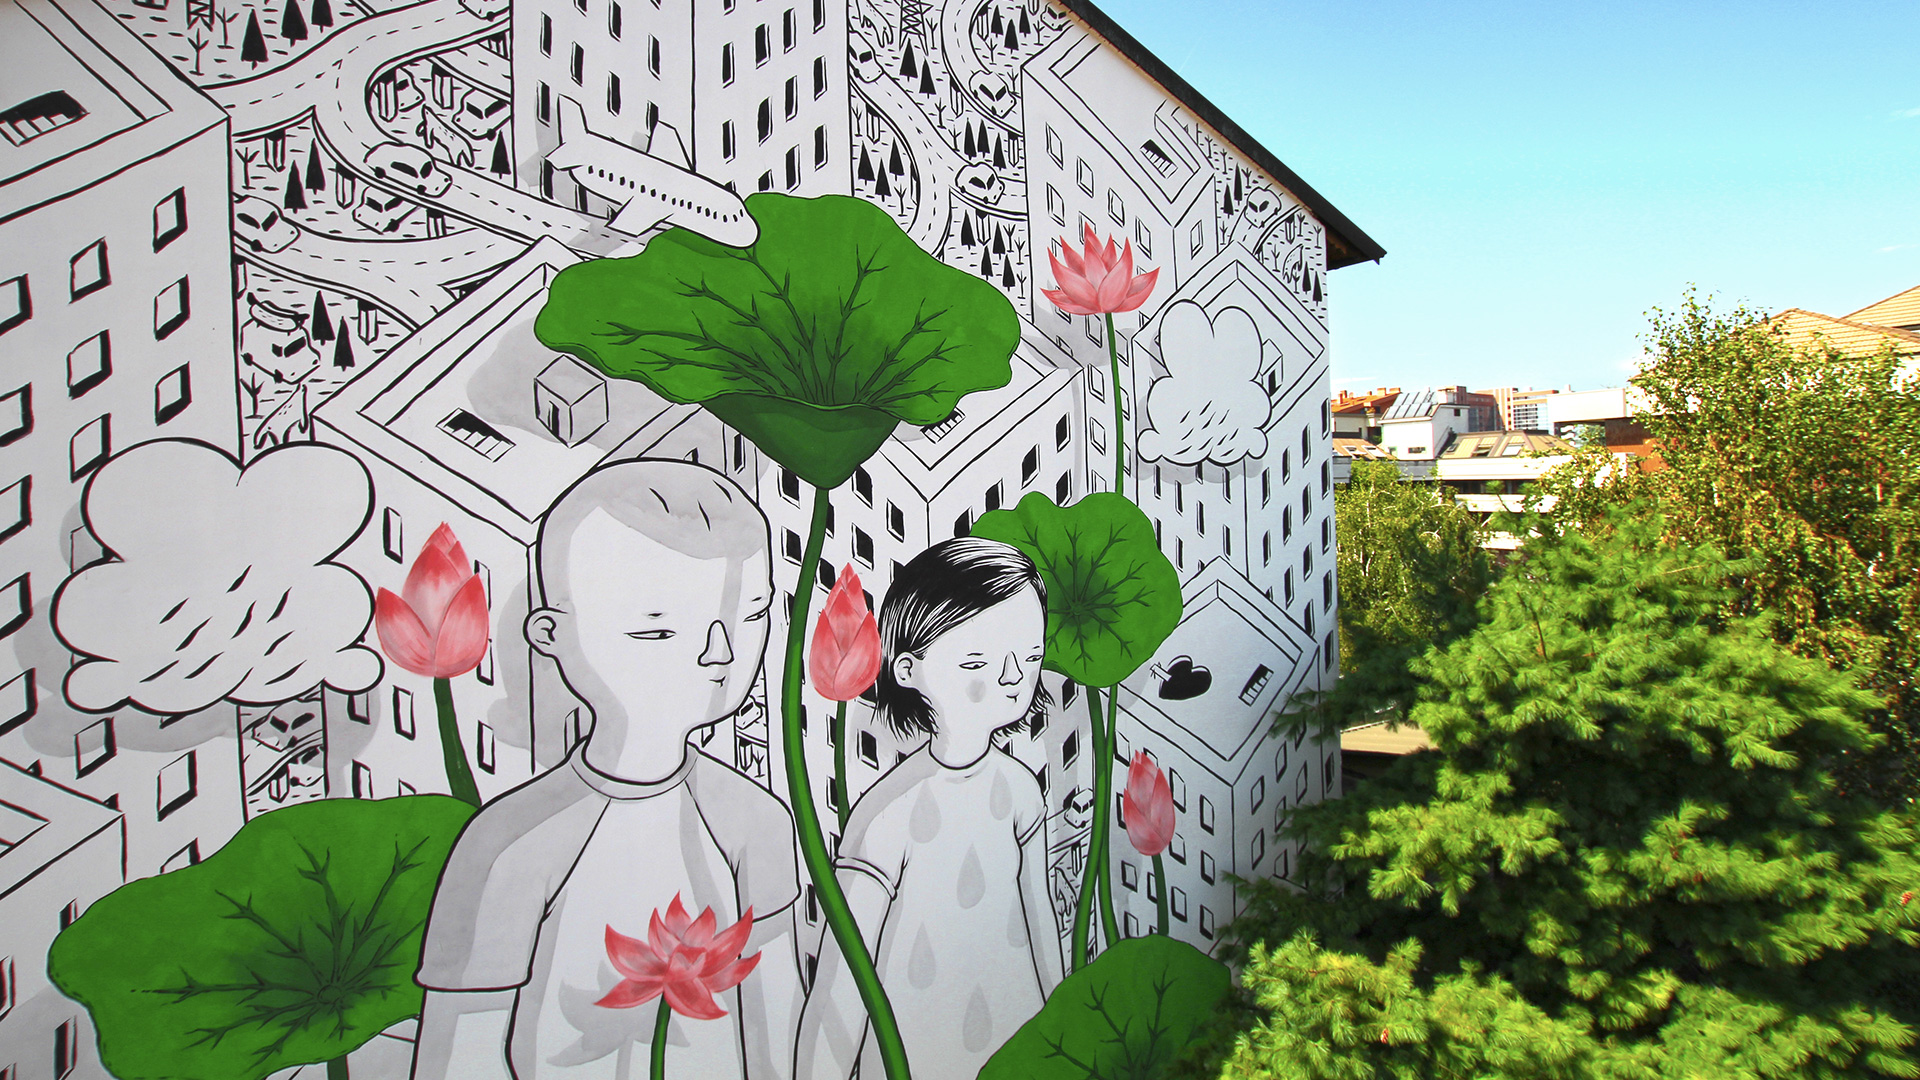 Street Art: i murales più belli in Europa